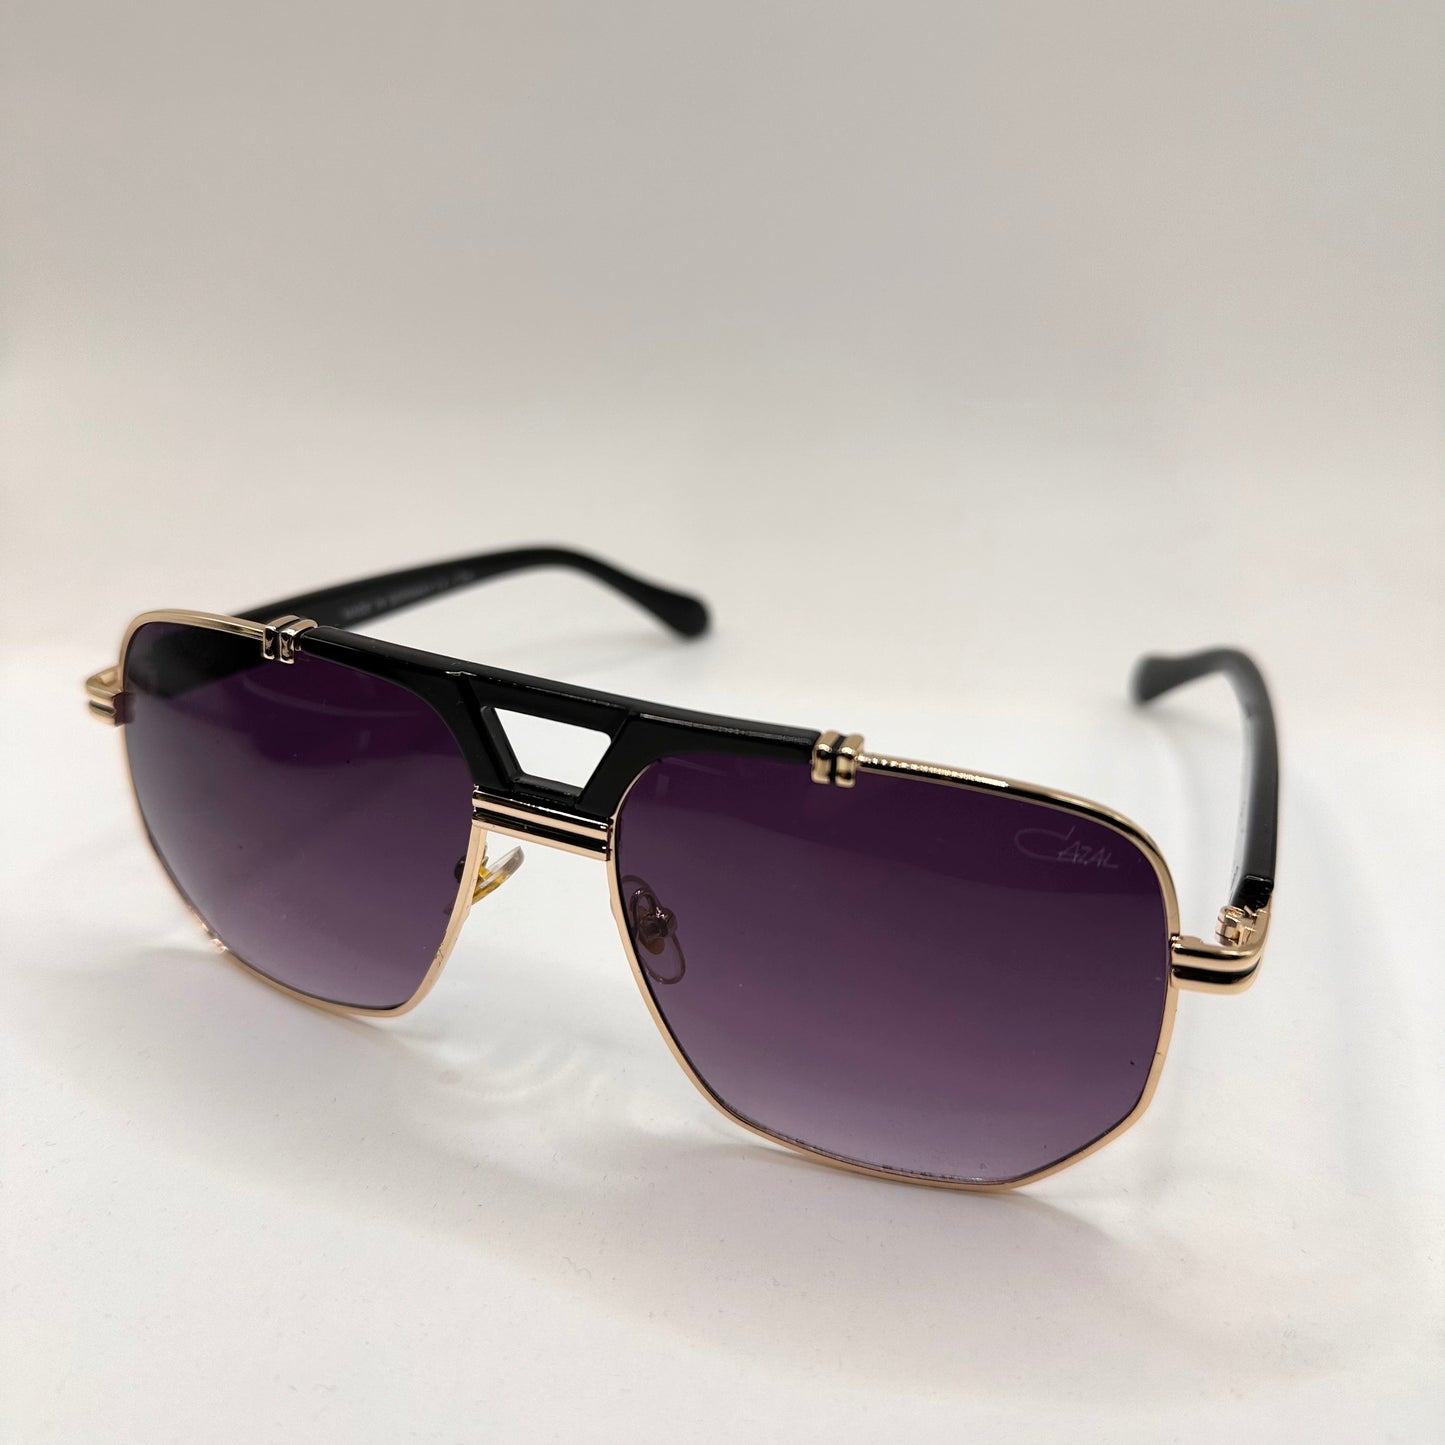 Culebra Sunglasses